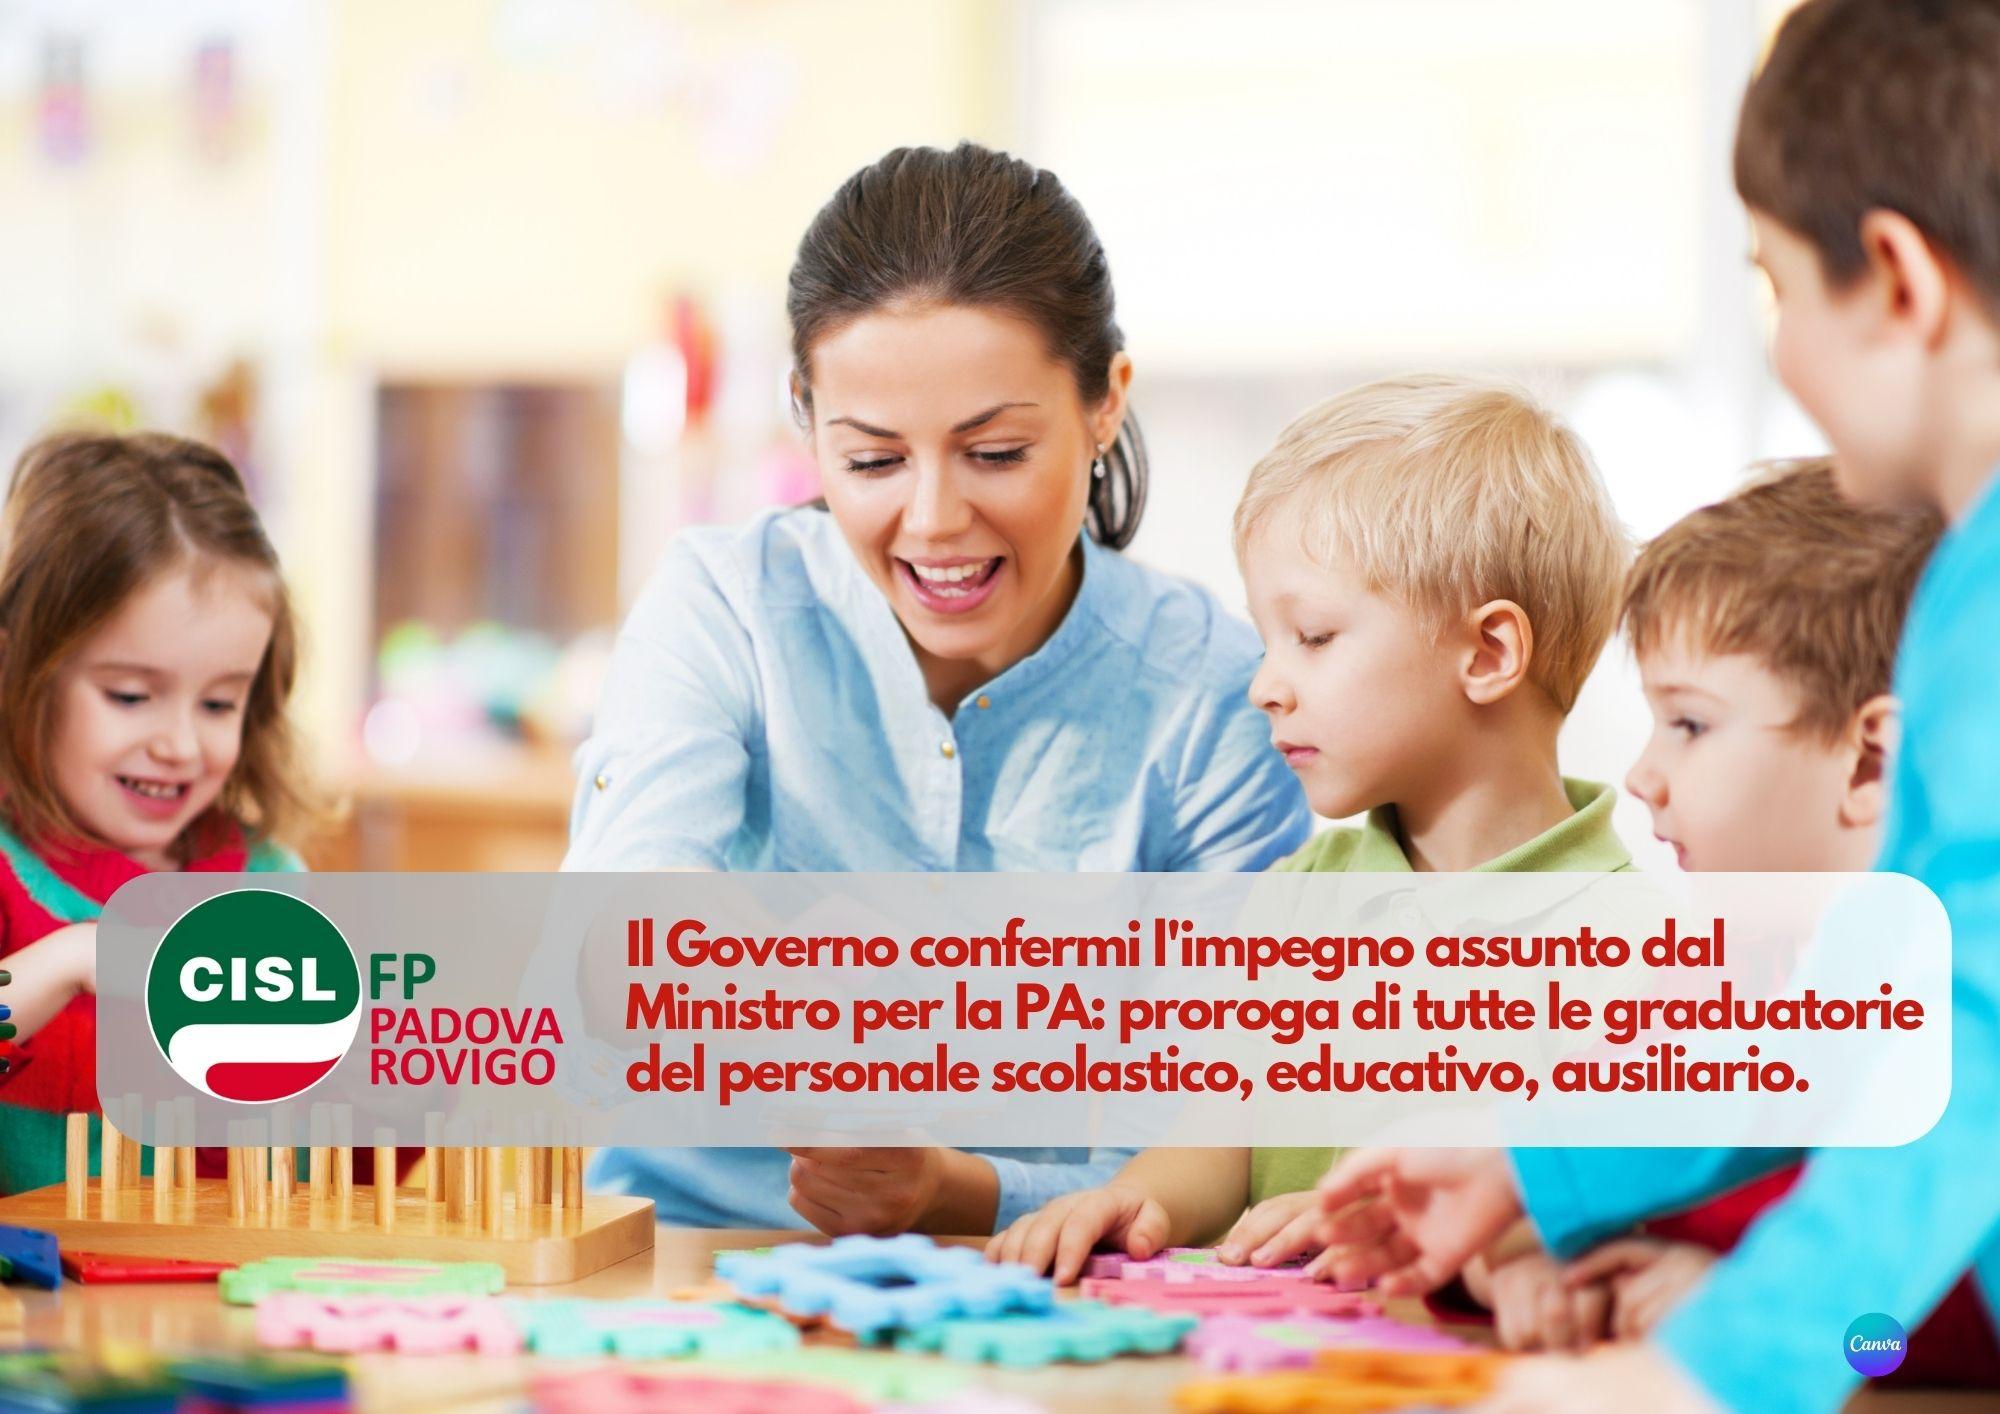 CISL FP Padova Rovigo. Il Governo confermi proroga graduatorie personale scolastico, educativo, ausiliario